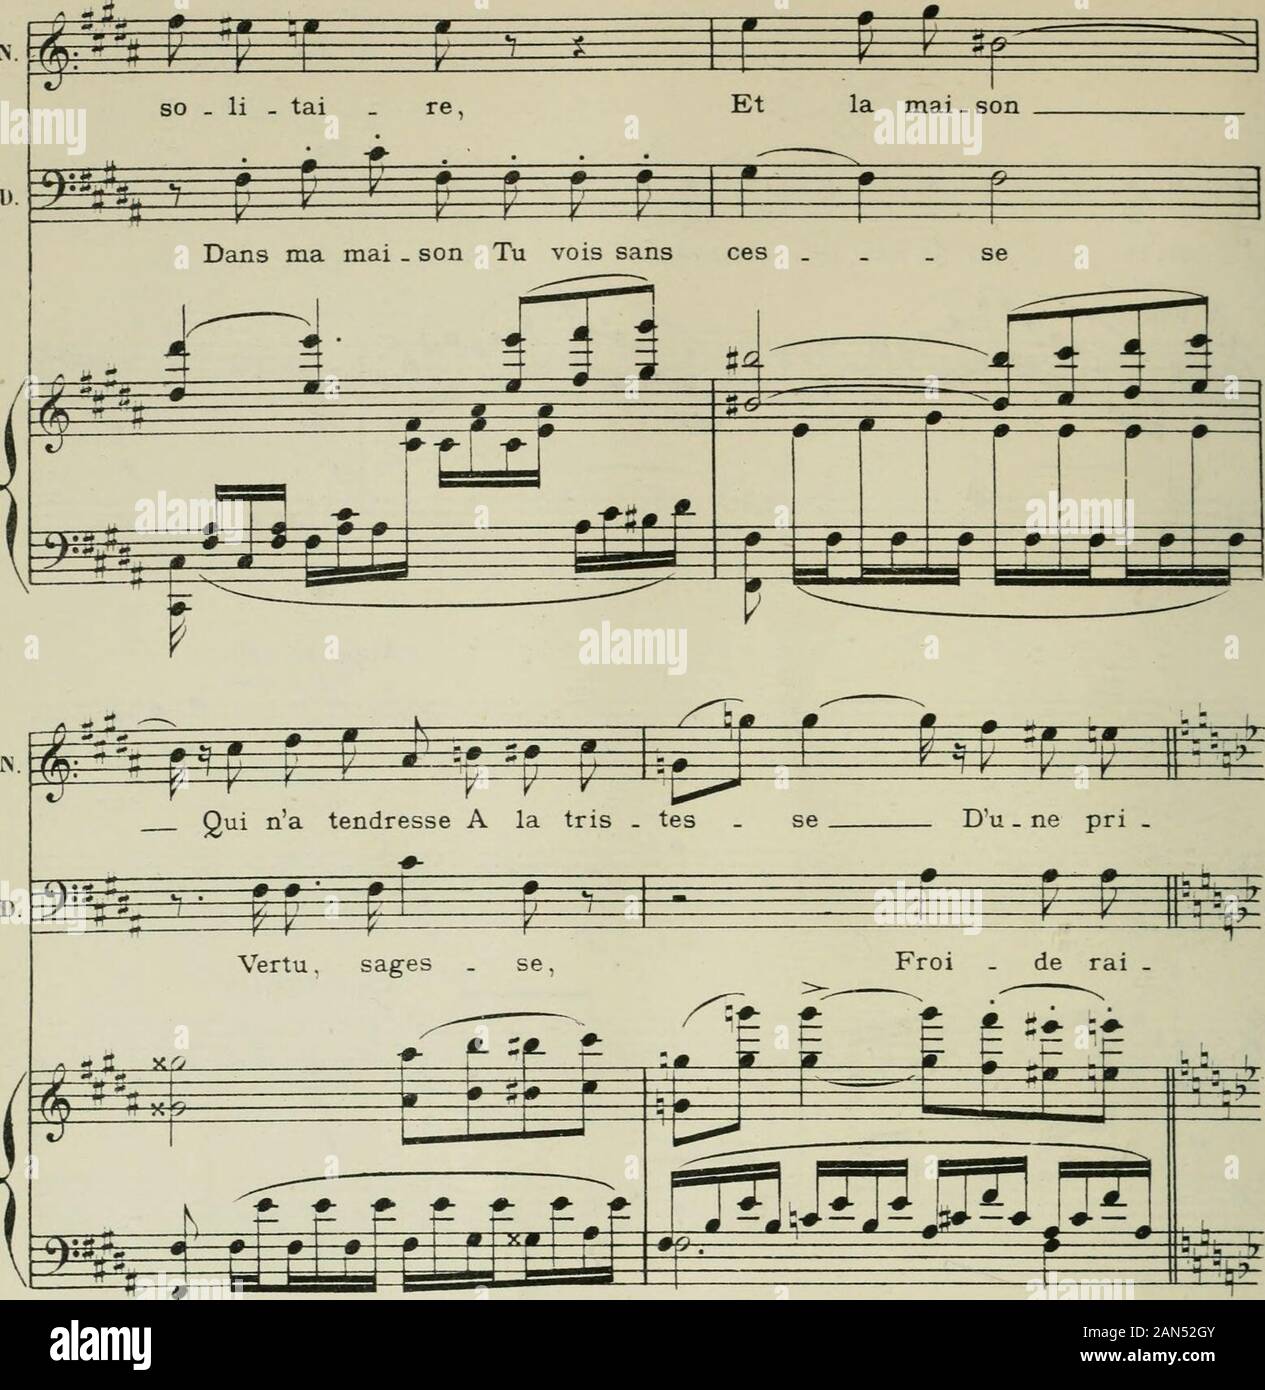 Phryné; opéra-comique en deux actesPoème de LAugé de LassusPartition chant et piano, réduite par l'auteur, avec un dessin de FMarcotte . Appassioiiatomf ^ ë Rien sur la i ^ f jt 5 .^ Mer . ci ! i r^ ^. ^^^y^ Appassionato ^ rç; ^v^^^S f: O / S - * ^ V i ^ f ^ s^=« ^  r F=^ r^ ^ ter - re Nest soli.tai   re ! Riensurla ter re nest -rrM^-l^ ^ ^ -3 ^ r ^ ; Cé.li  ba.tai re, r-r- Toujours austè . re, n *11 0 AA i ^^^ ^ ^ » ^^^ » i^ ^-^L * -• jr * -i»i r 3o N. ;. t7 ^99- T ^.; ^ ^ P t^^ -f**- Ty t^i=* ^==F son . Le temps sen.vo   le ! Tout est fri . vo . le Si non dai   ^-^ -* * n*-* H , è 1 ^ t F Stock Photo